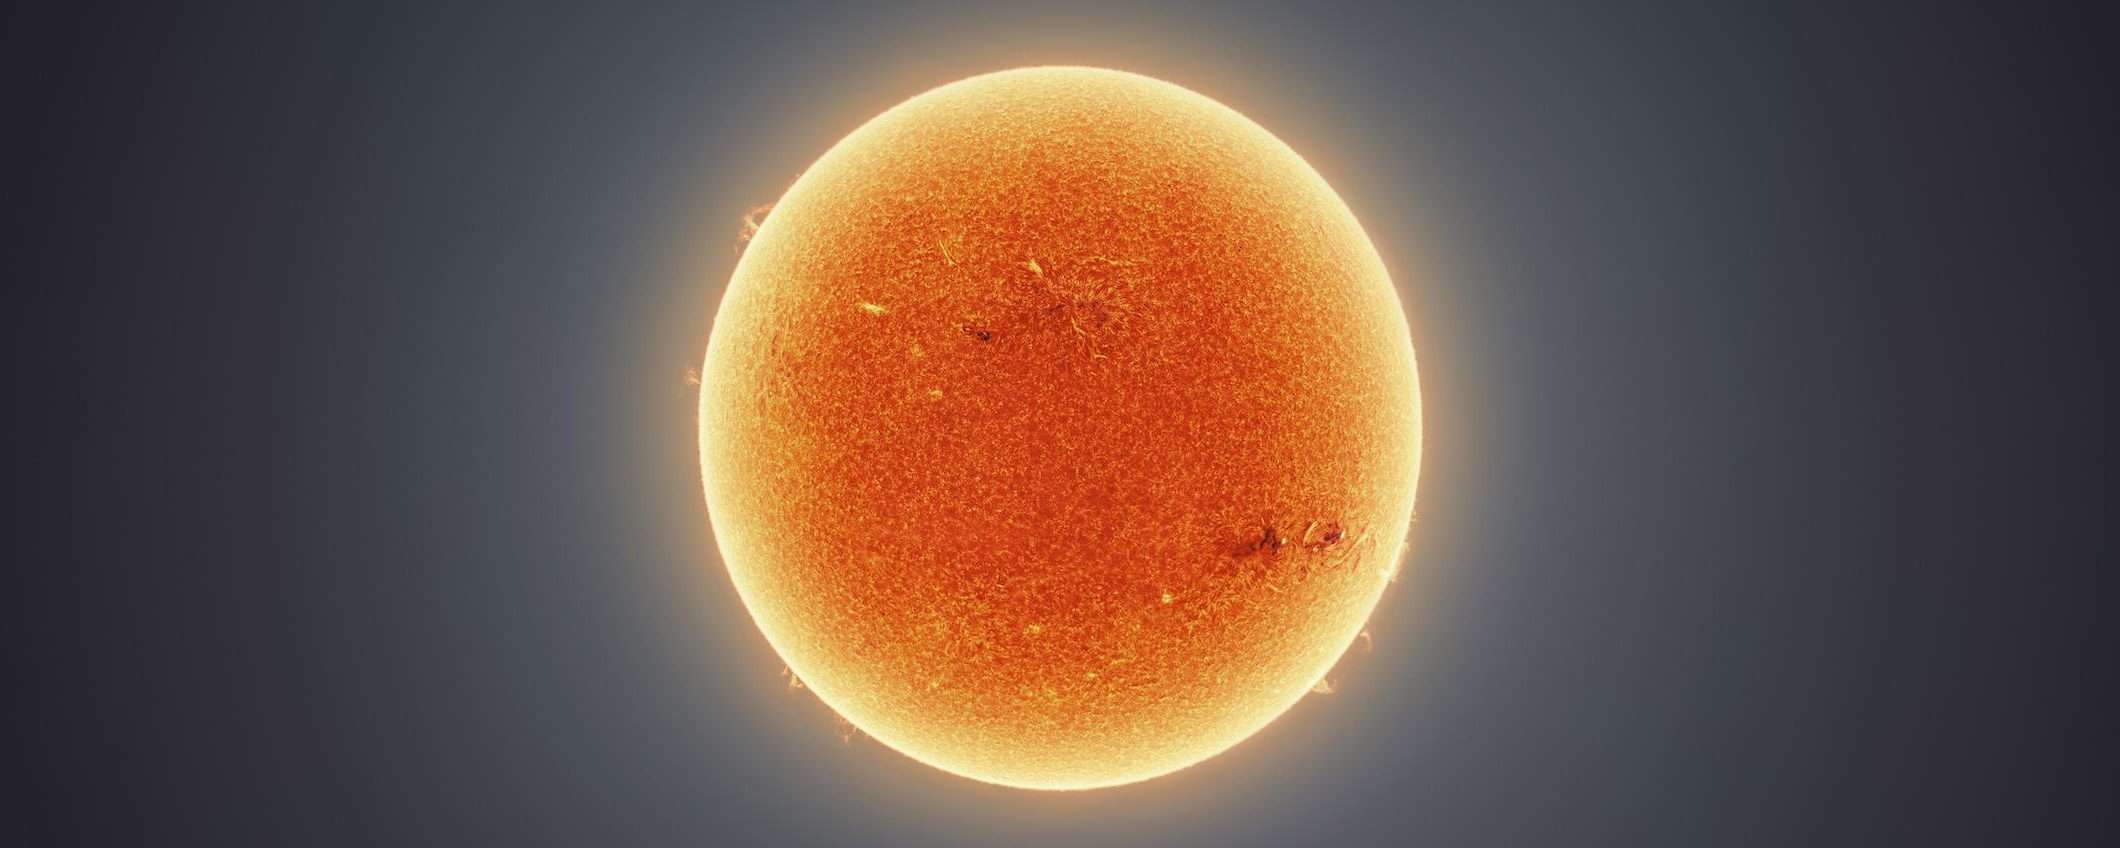 Il Sole a 300 megapixel, ecco la dettagliatissima foto